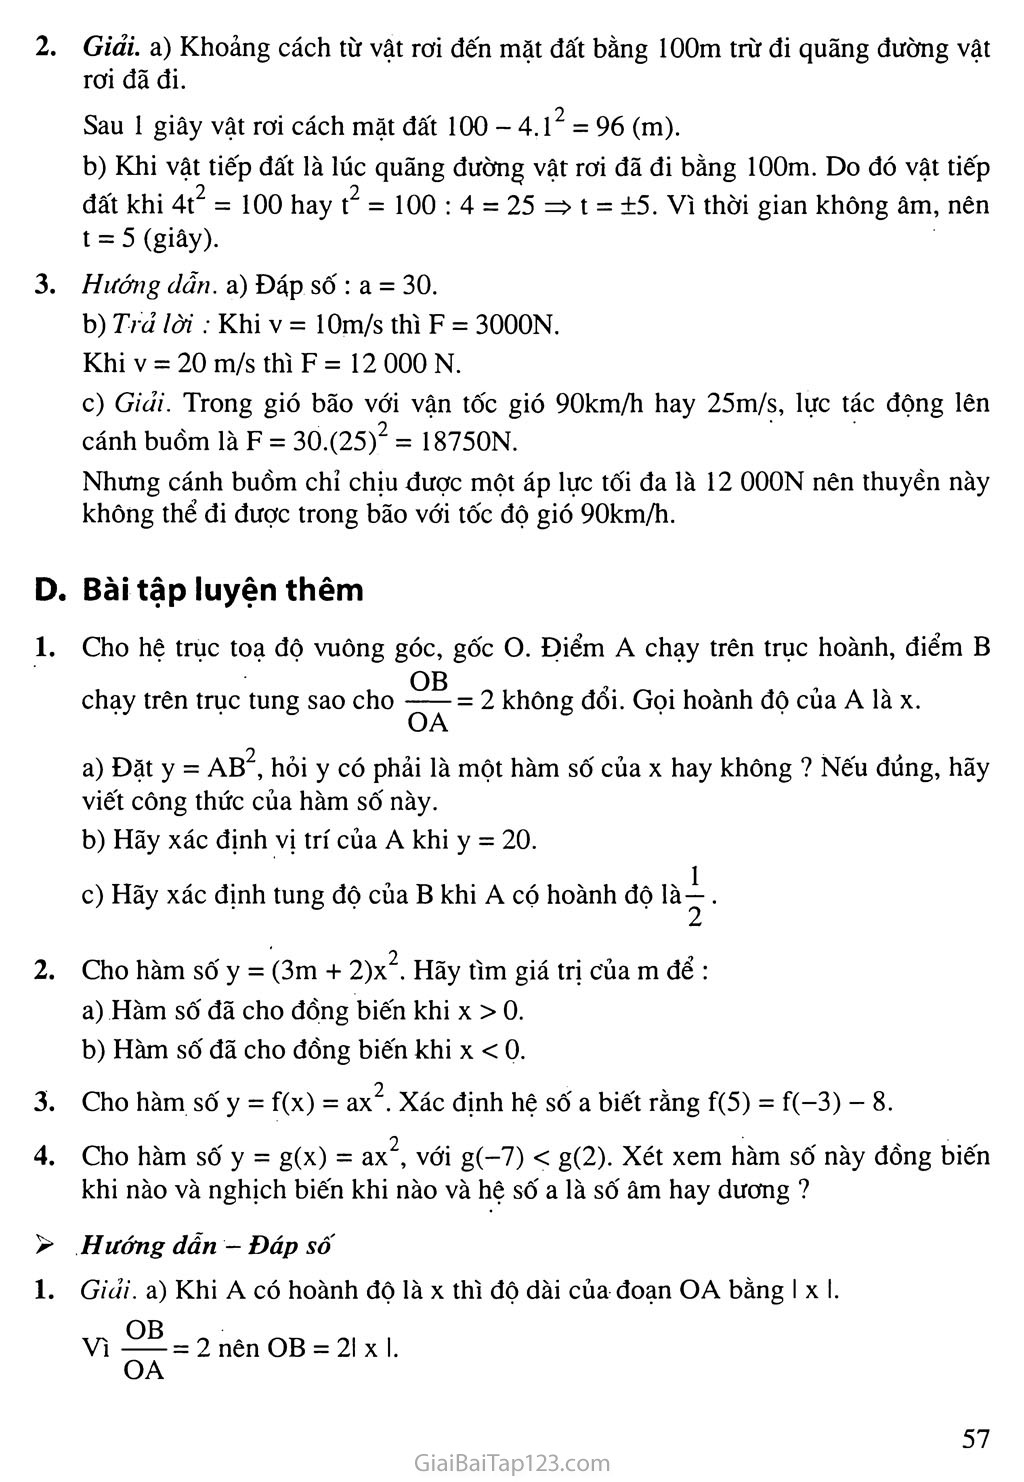 Bài 1. Hàm số y = ax2 (a ≠ 0) trang 4